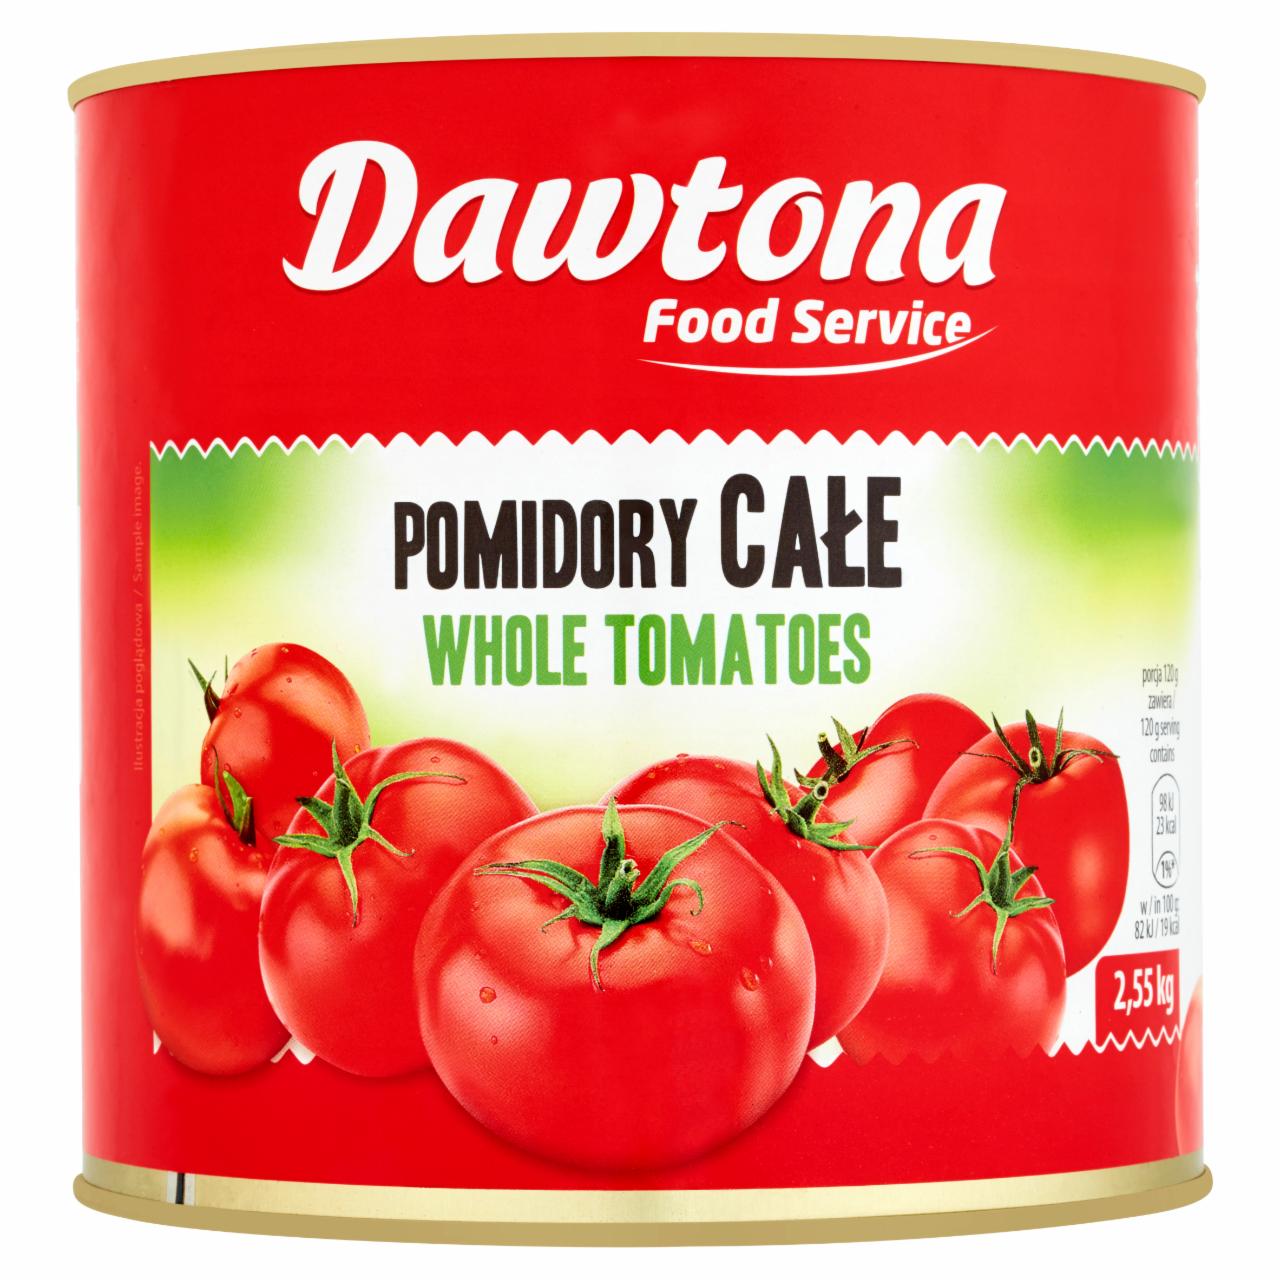 Zdjęcia - Dawtona Food Service Pomidory całe 2,55 kg